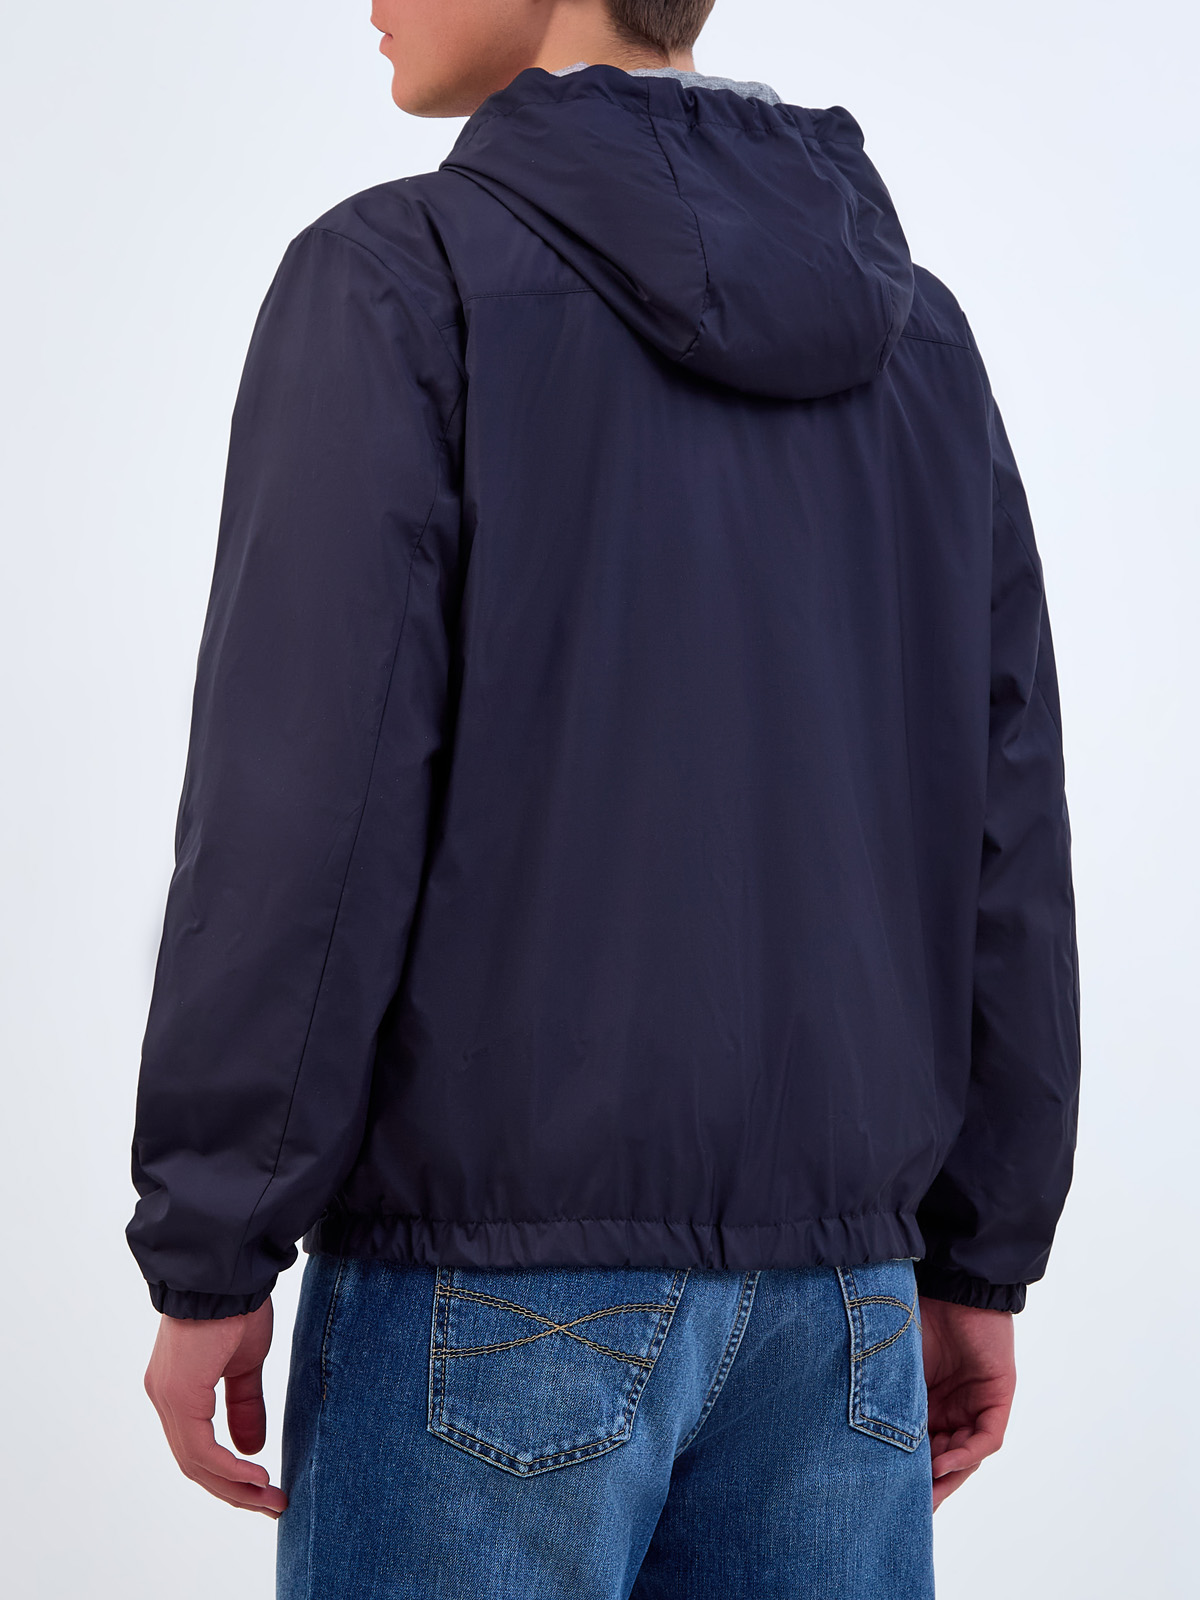 Двусторонняя куртка-ветровка из влагозащитного нейлона и хлопка PESERICO, цвет мульти, размер 52;54;56 - фото 5